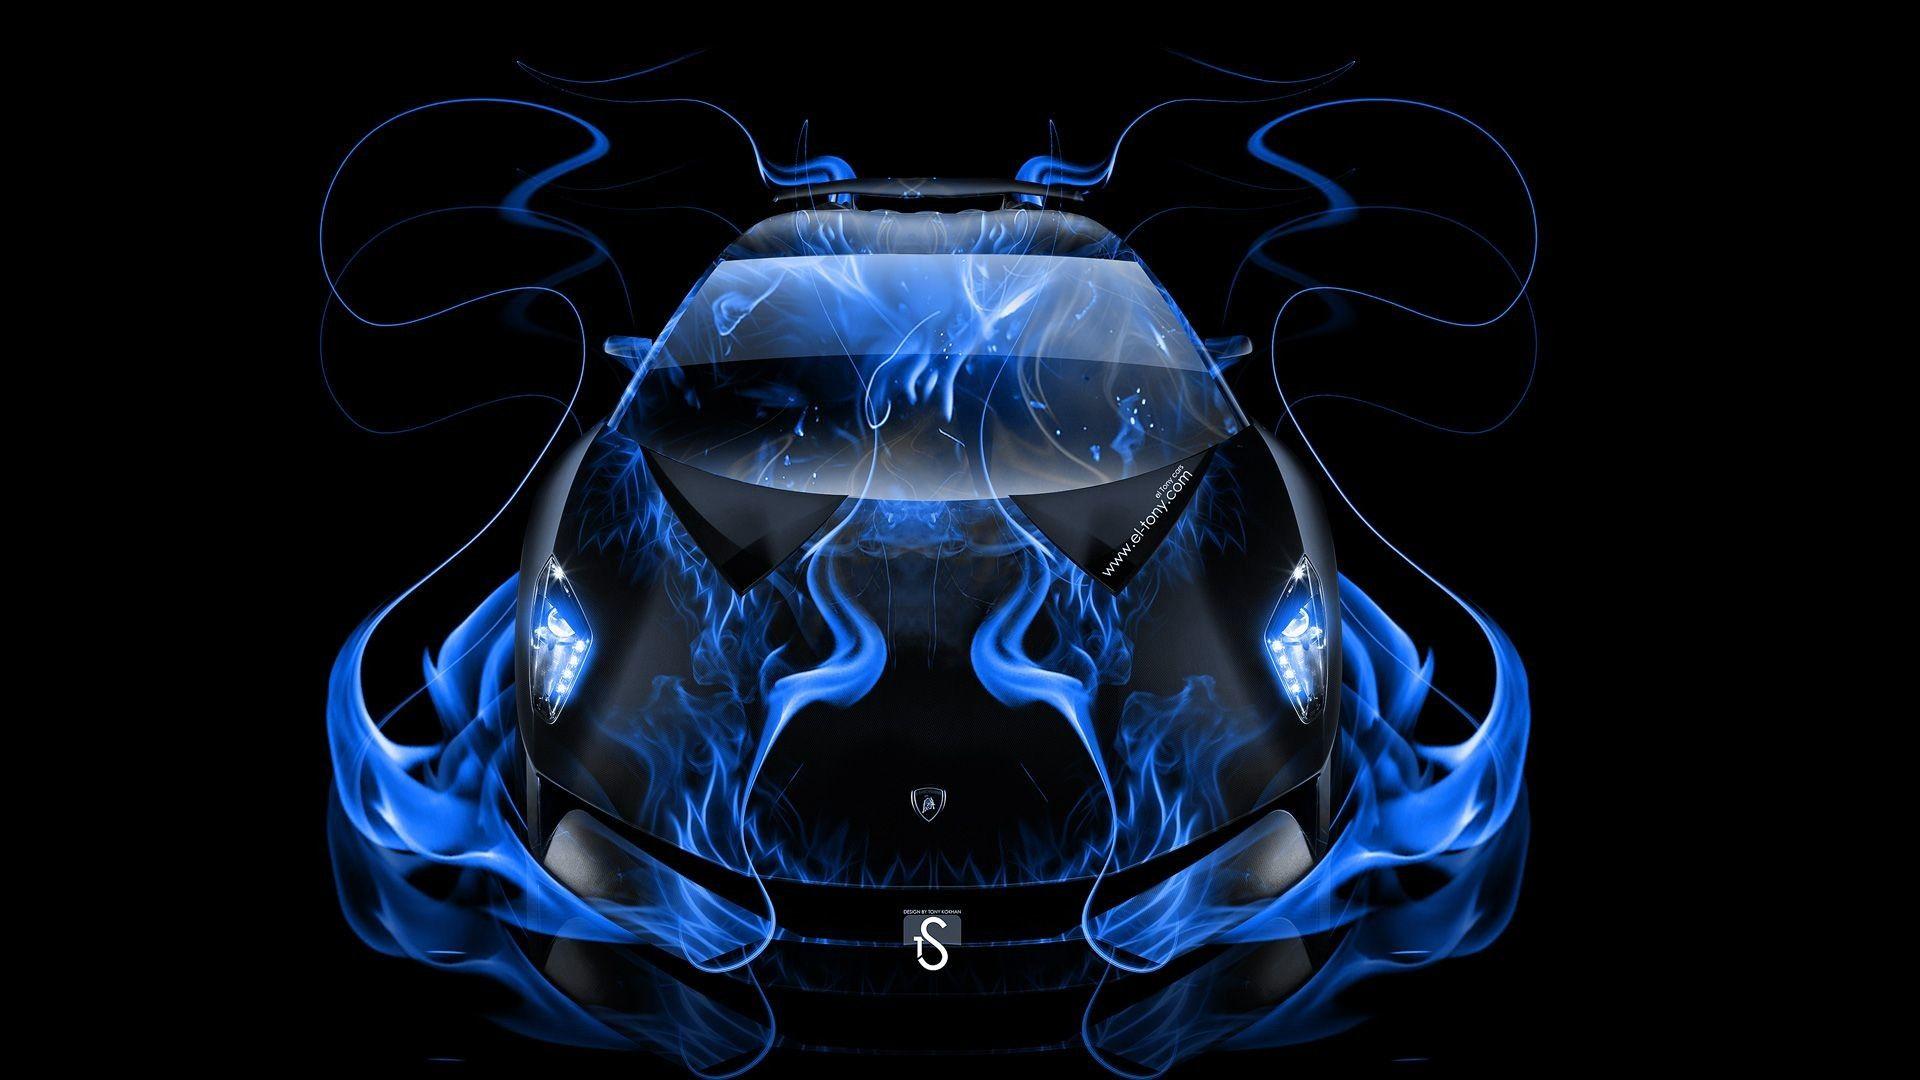 Blue Lamborghini Sesto Elemento Wallpapers - Top Free Blue Lamborghini